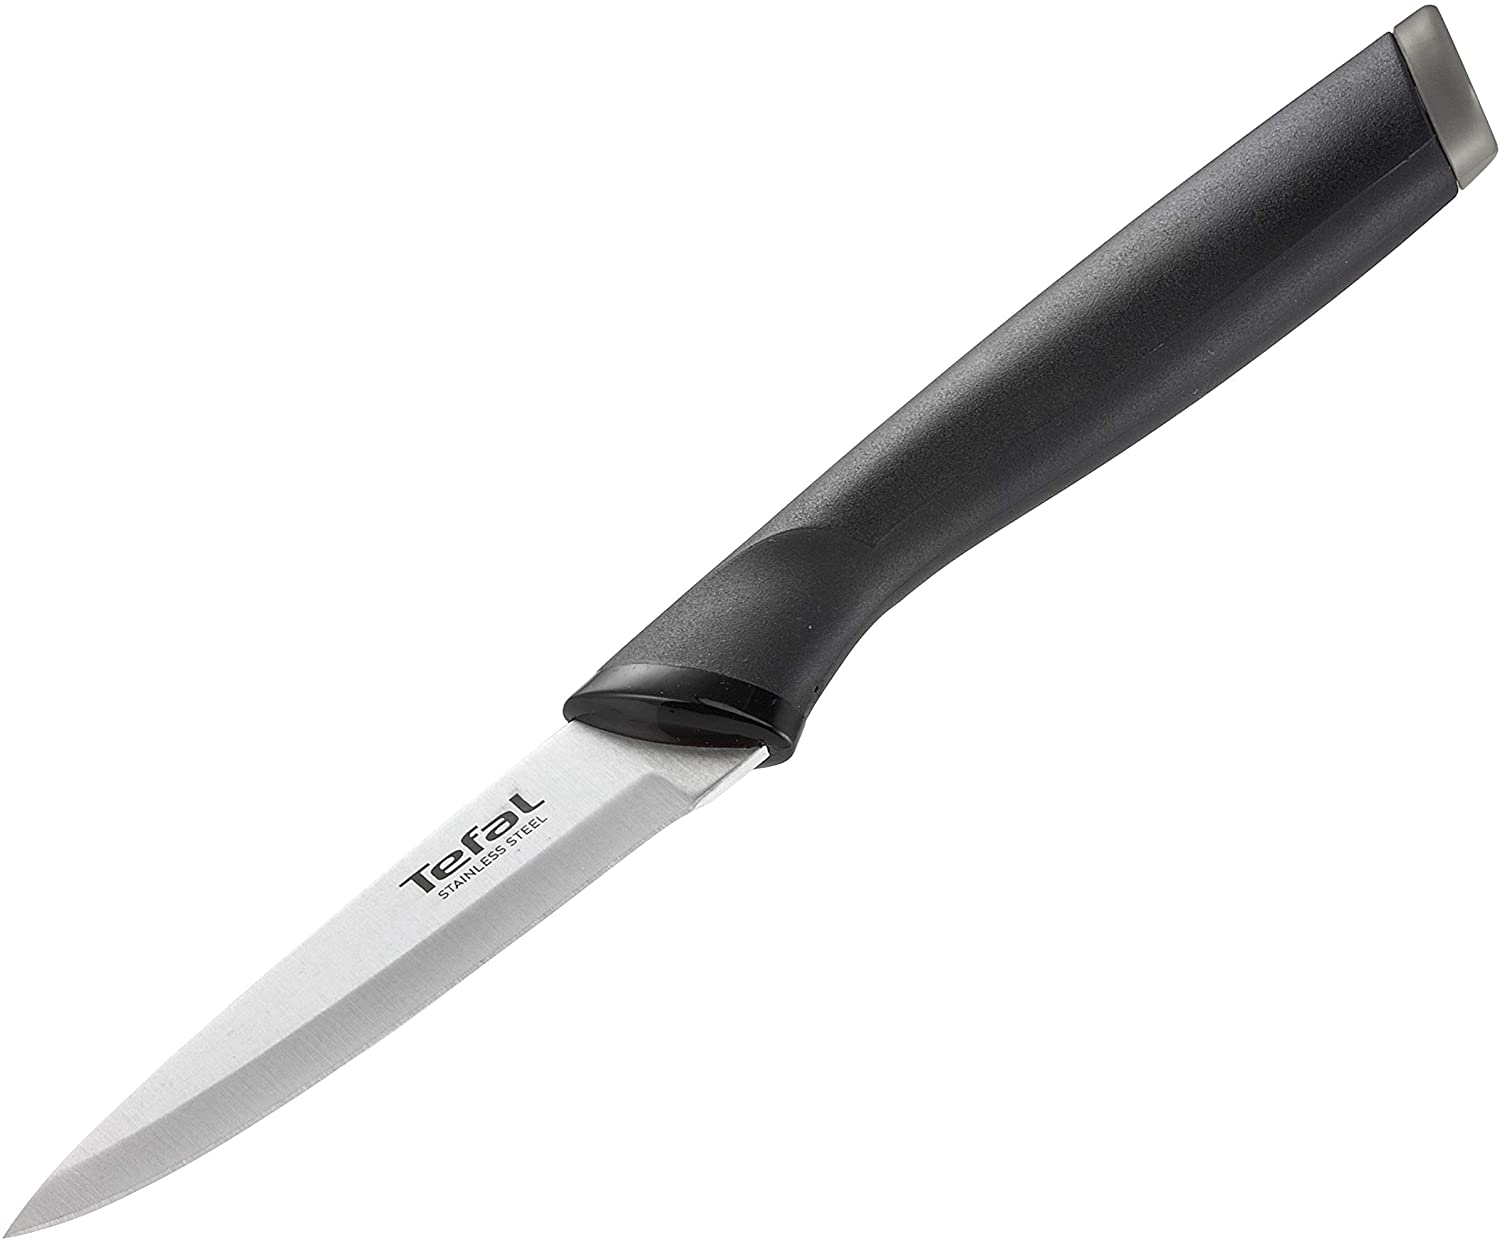 Tefal – Knife, Black Paring Knife 9 cm Black